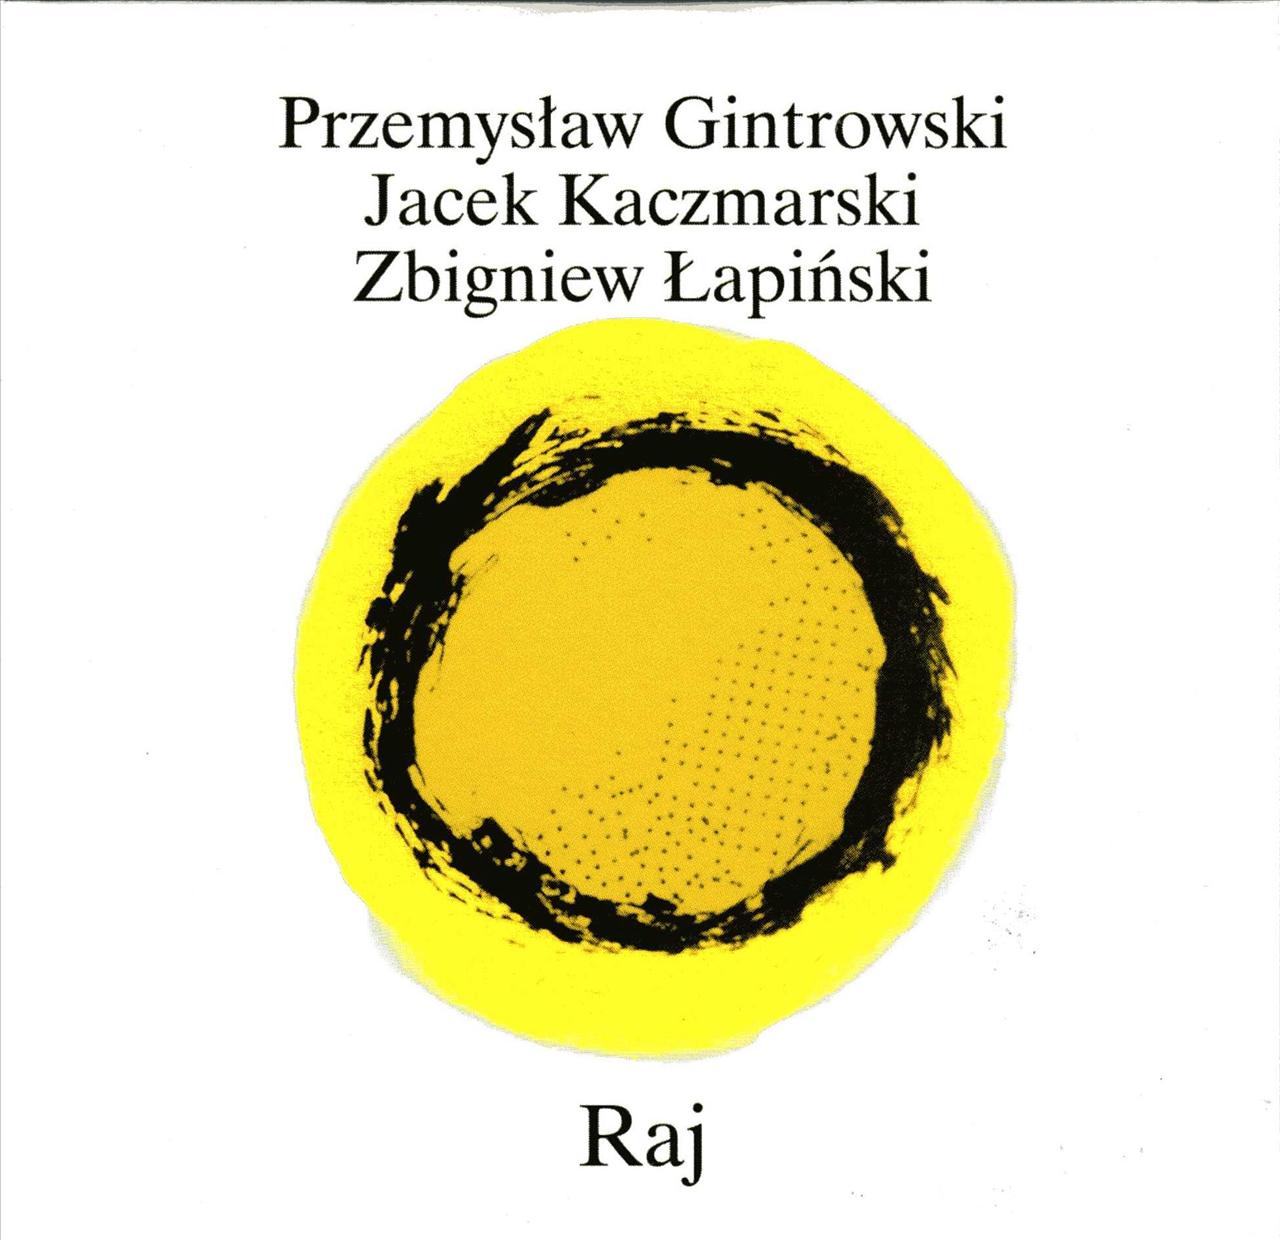 Okładki do płyt JACEK KACZMARSKI - 02-1980-Raj.jpg